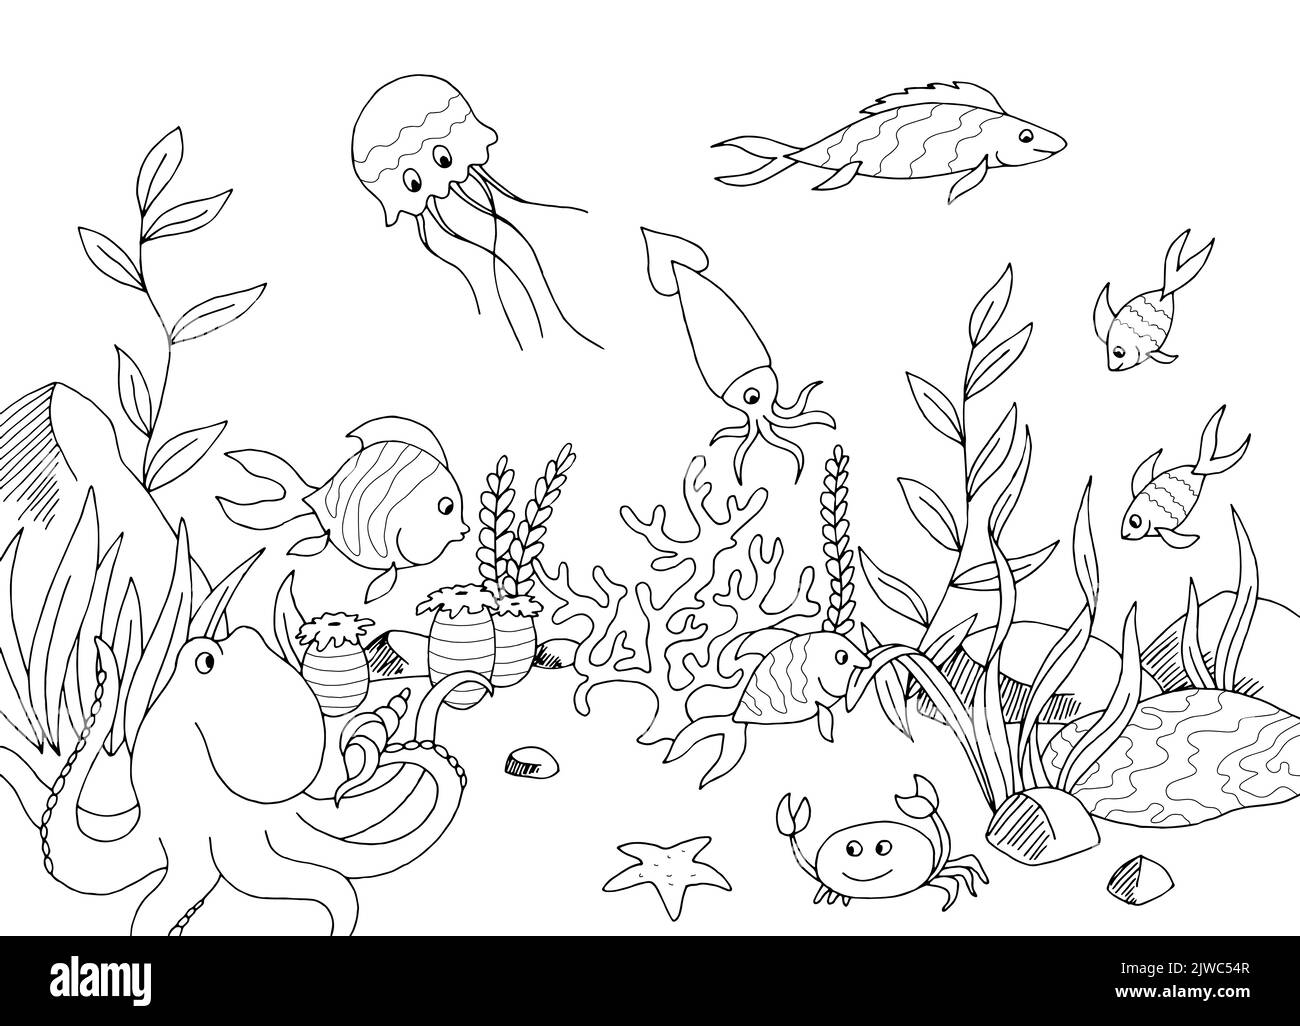 Lustige Fische Unterwasser Grafik Meer schwarz weiß Skizze Illustration Vektor Stock Vektor